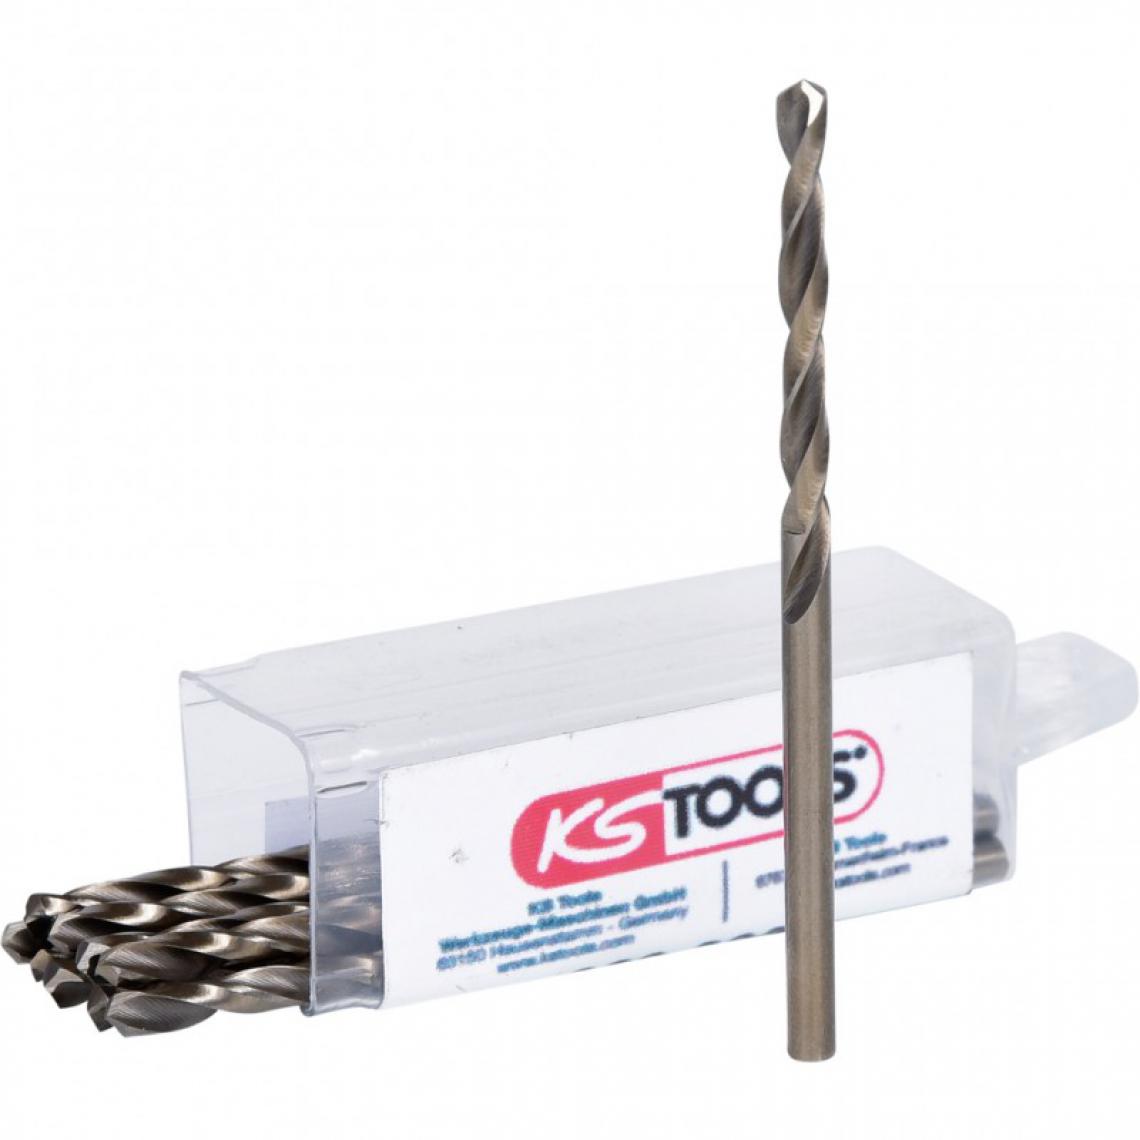 Ks Tools - KS TOOLS 330.3030 Lot de 10 forets HSS-CO au cobalt, Ø3,0 mm - Outils de coupe